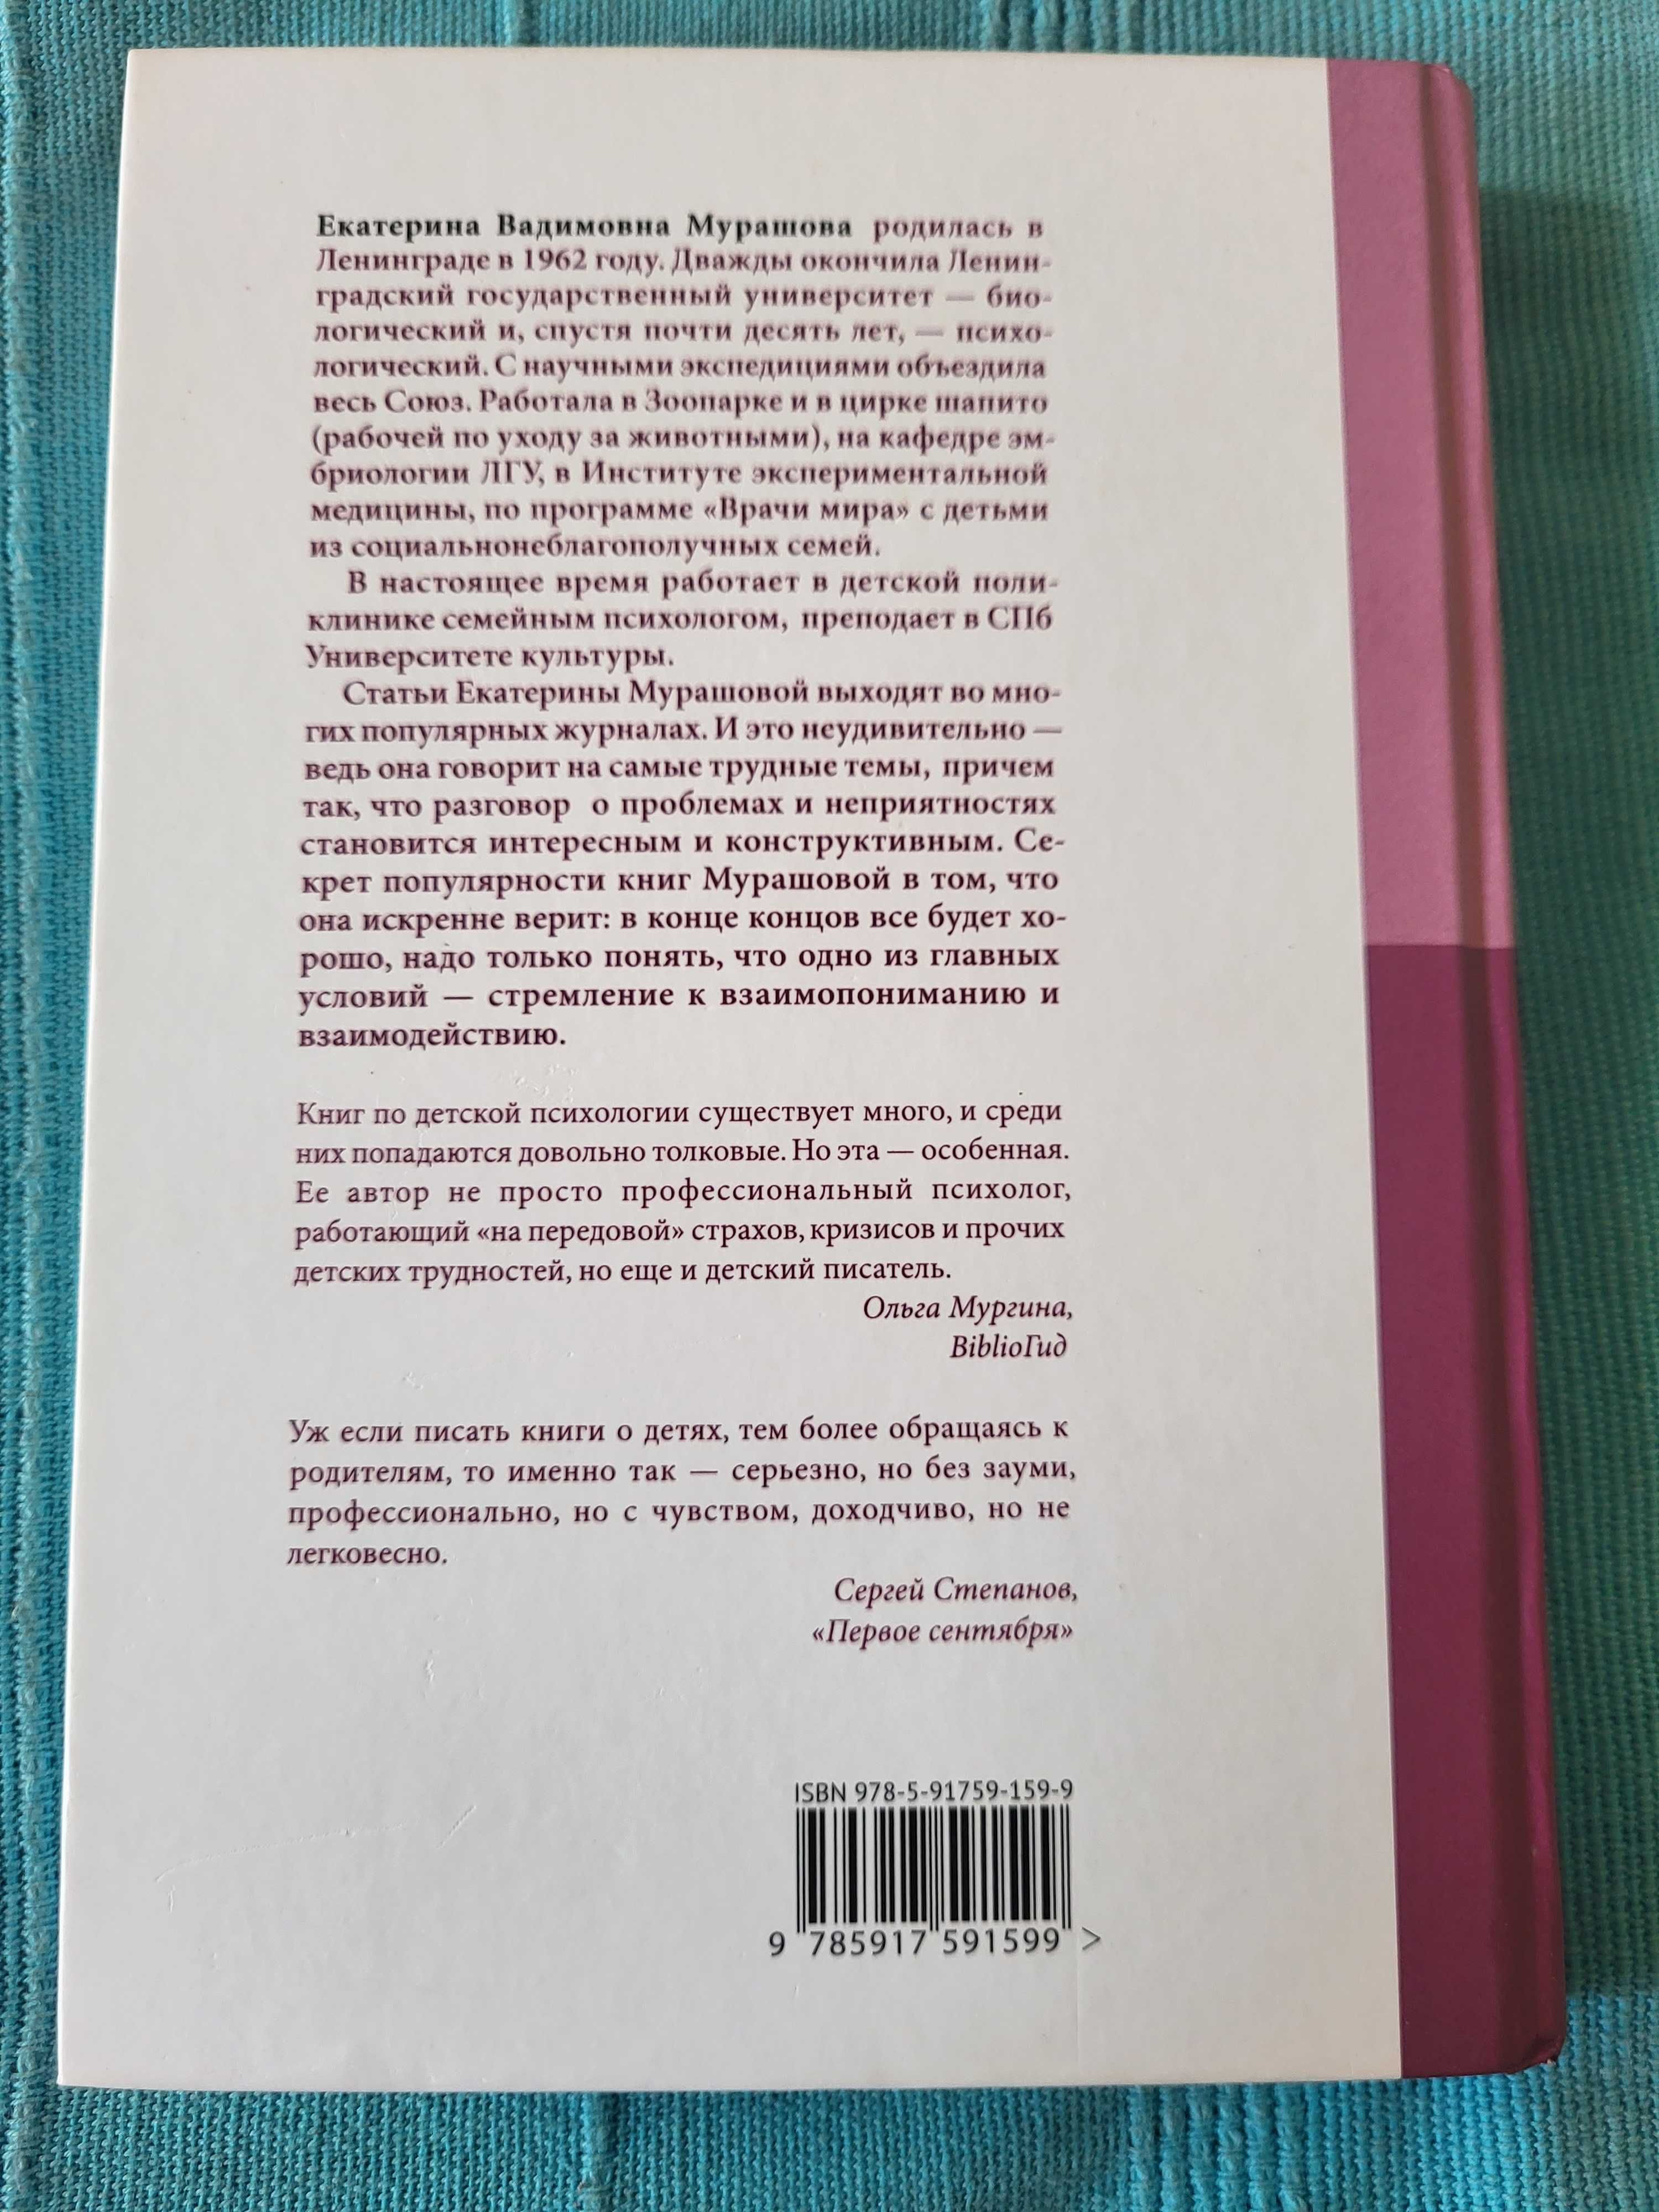 Книга Екатерини Мурашовой "Ваш непонятный ребенок"